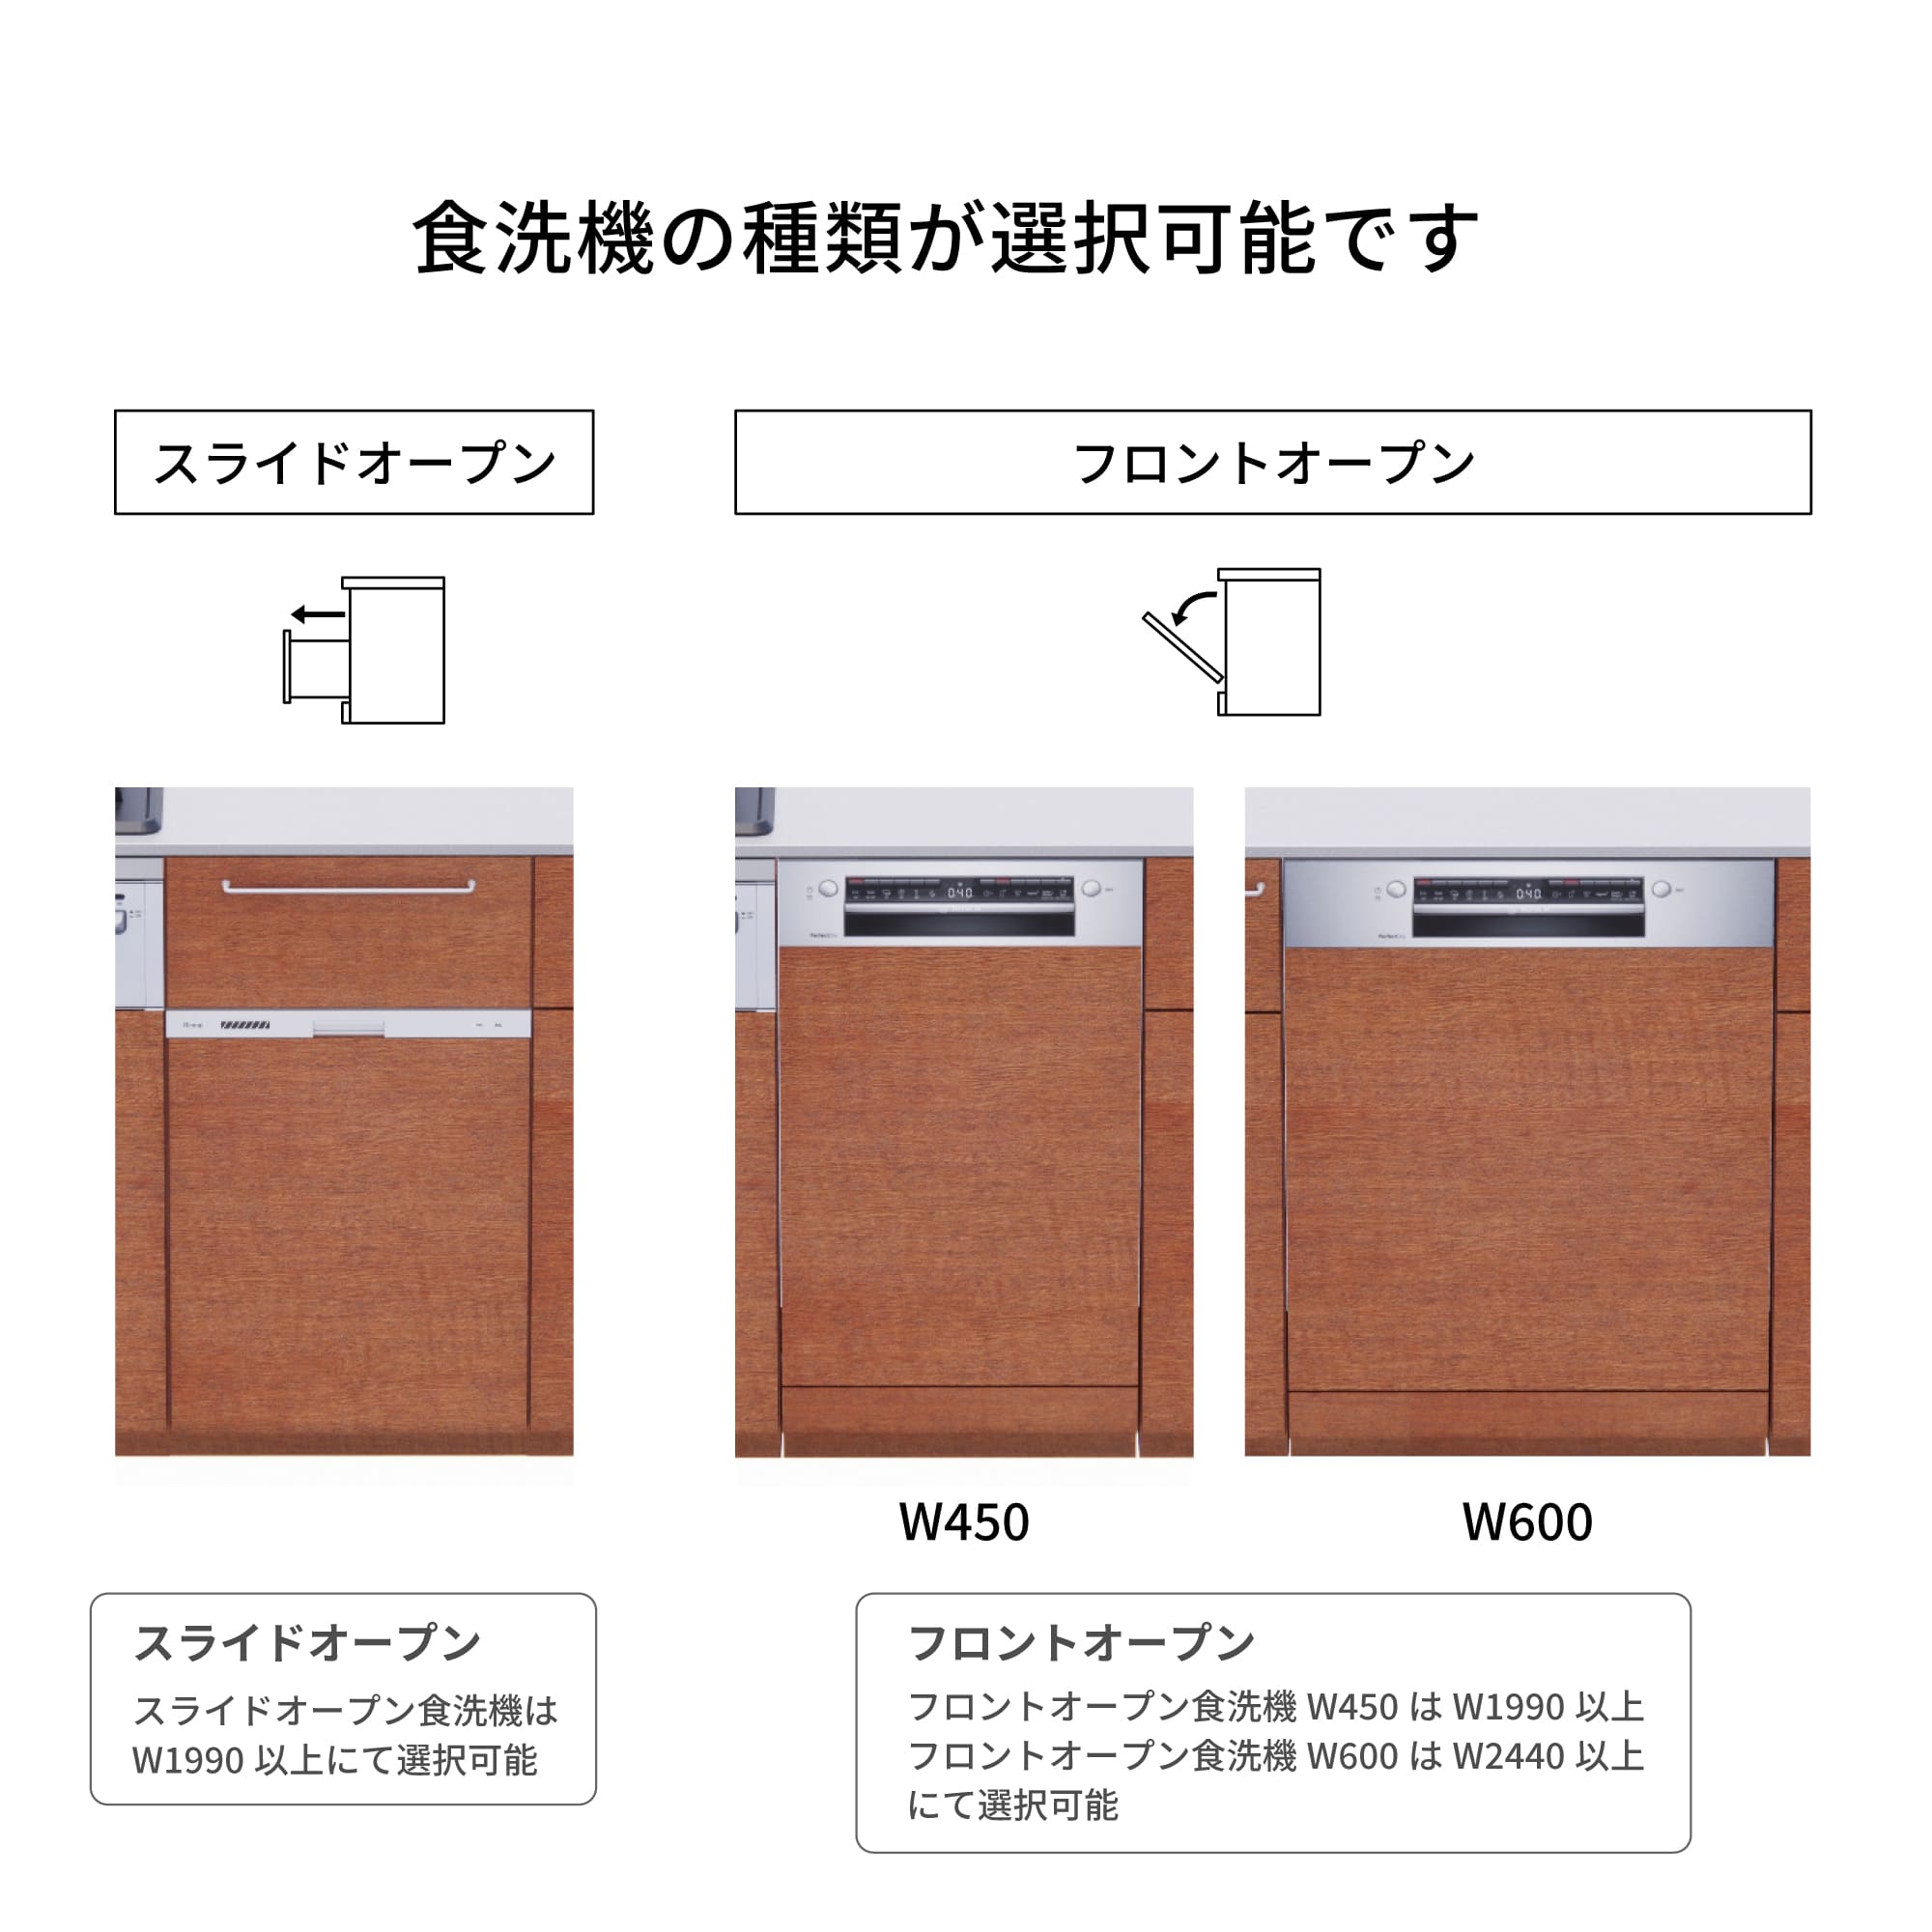 木製システムキッチン 対面型 W1990・コンロあり / オーブンなし / 食洗機あり KB-KC022-33-G183 食洗機が選択できます